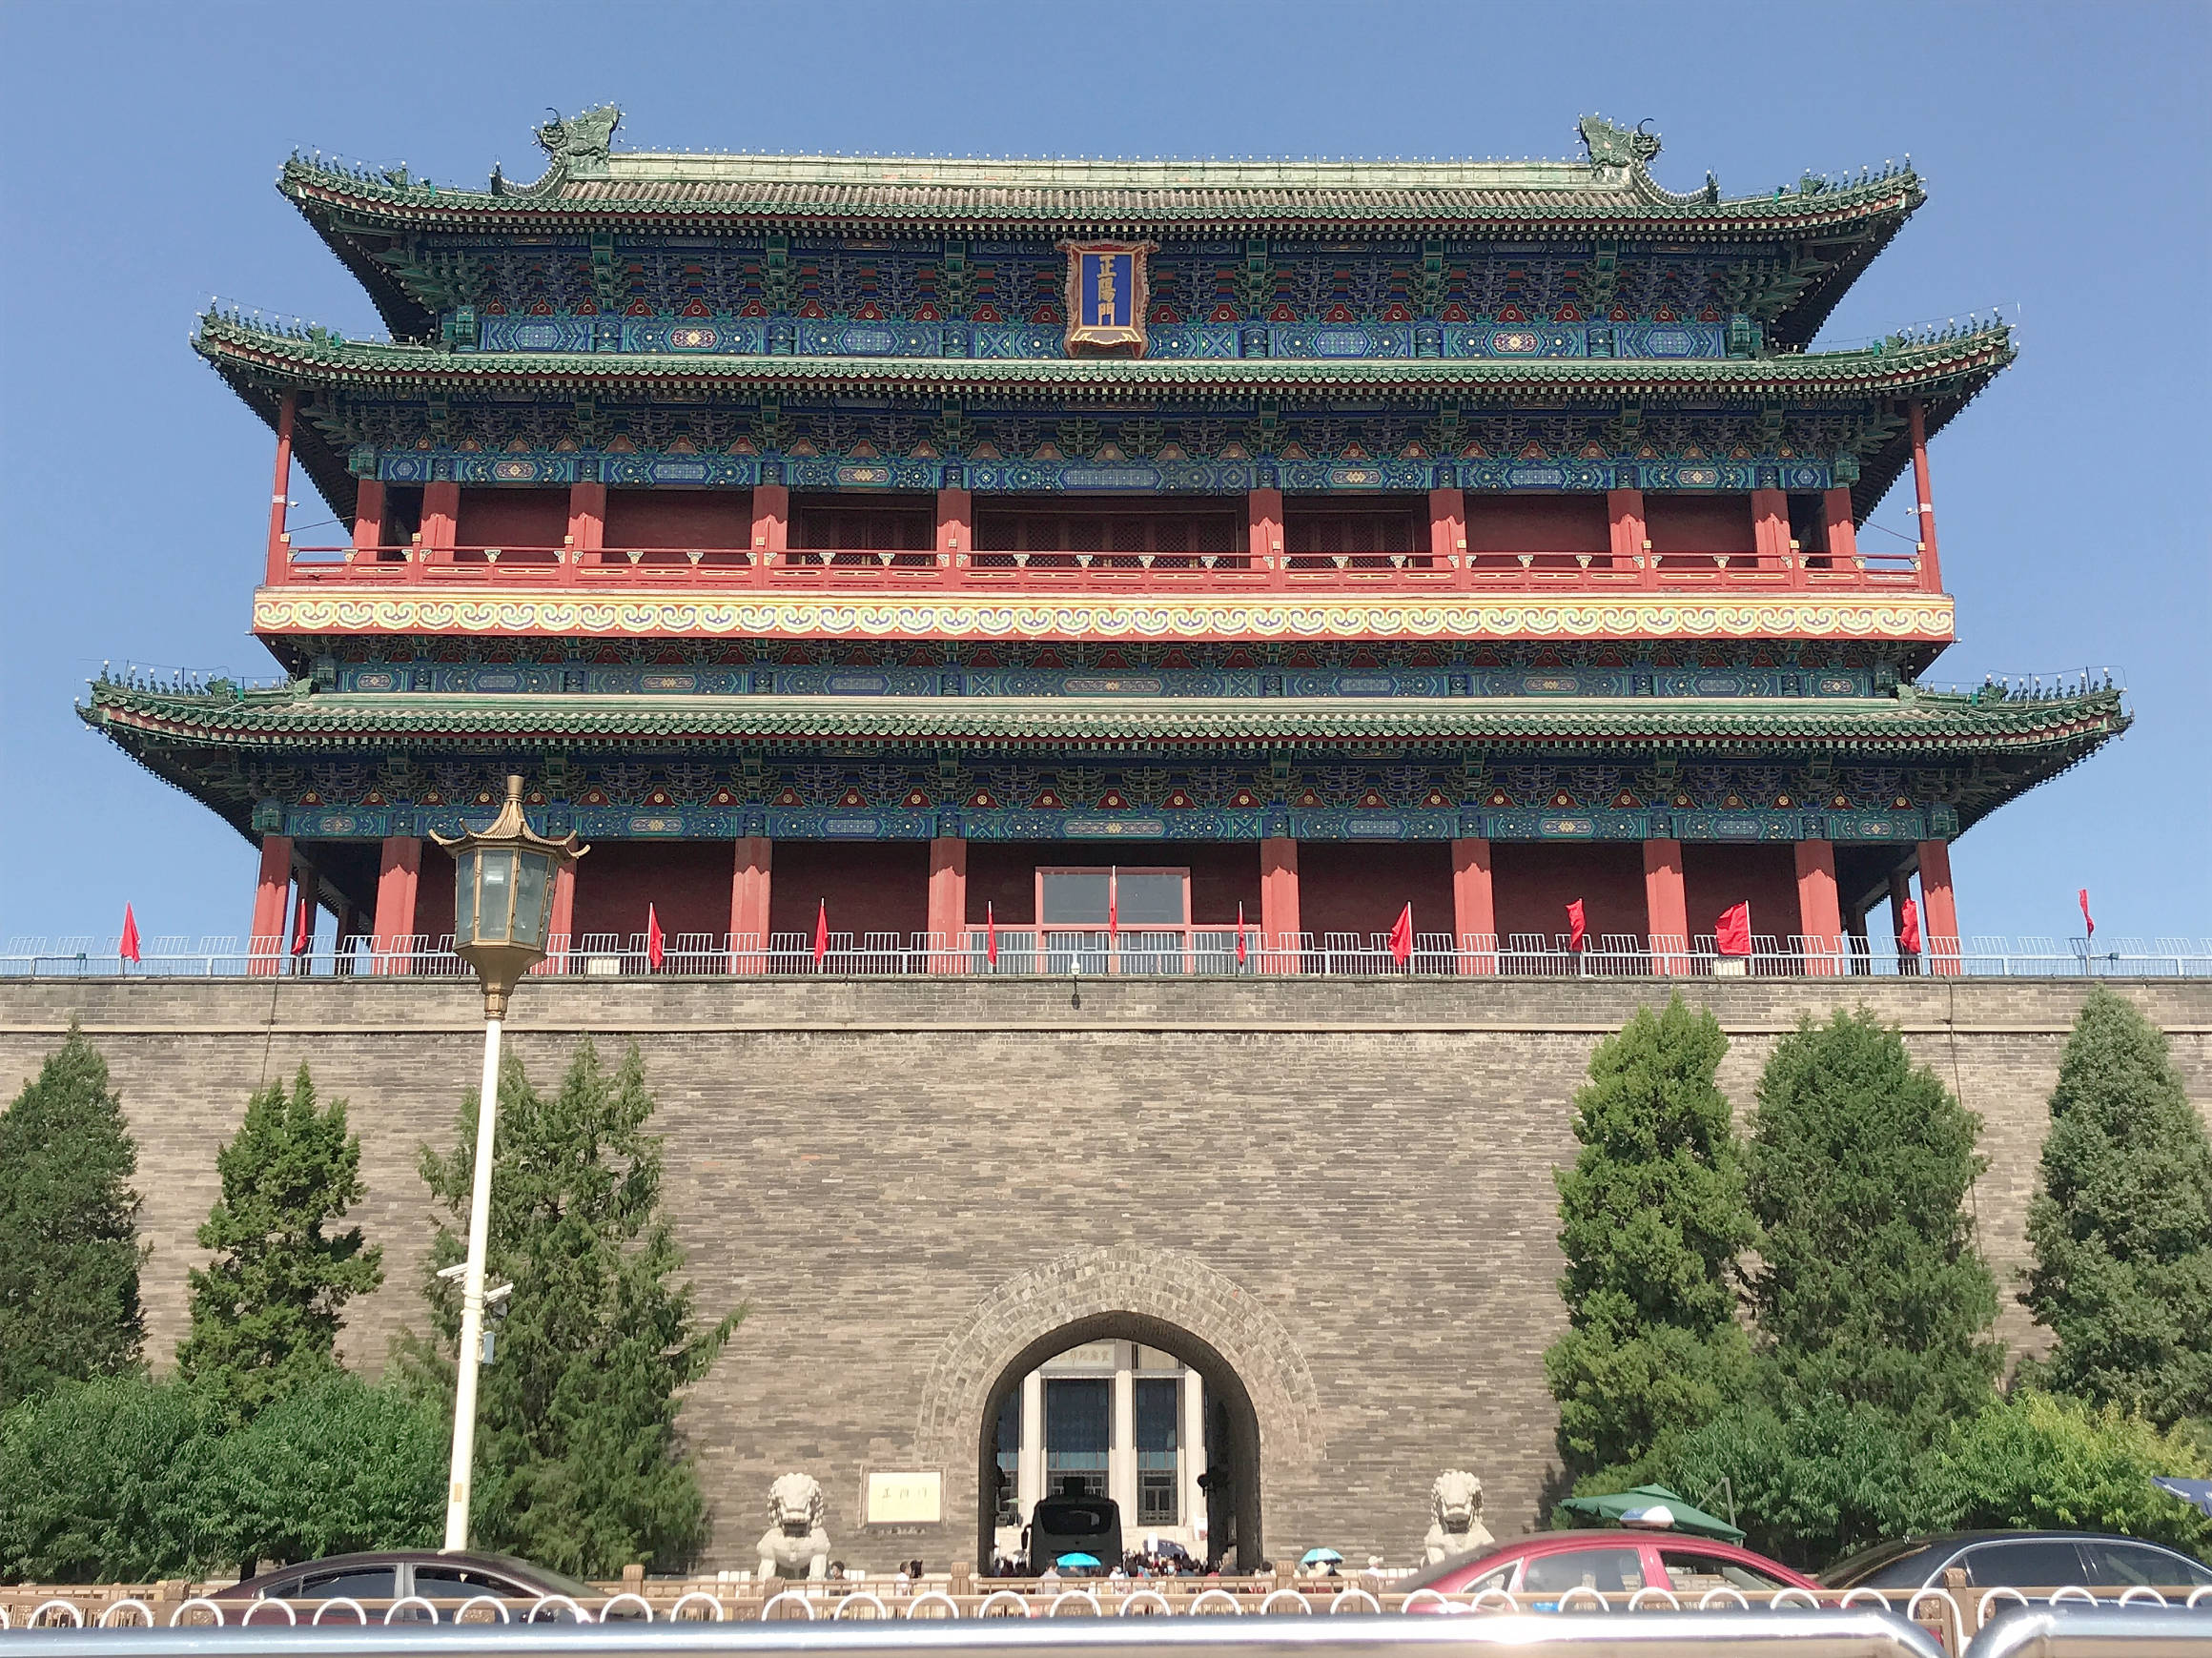 就来到了正阳门,位于天安门广场最南端,正阳门城楼为老北京所有城门楼